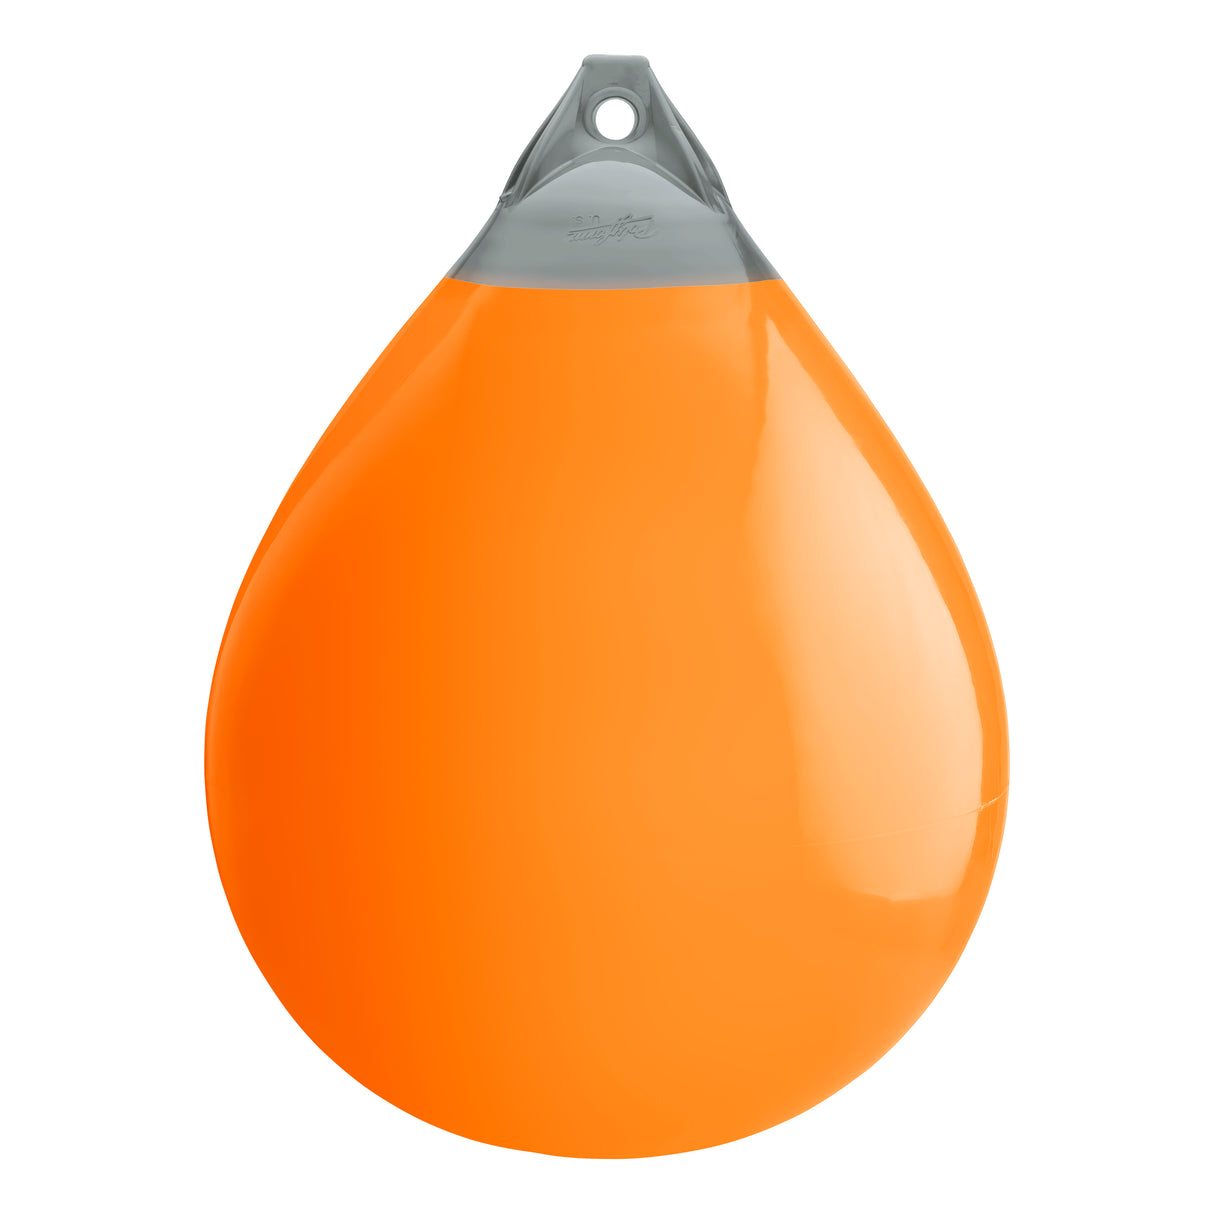 Orange buoy with Grey-Top, Polyform A-7